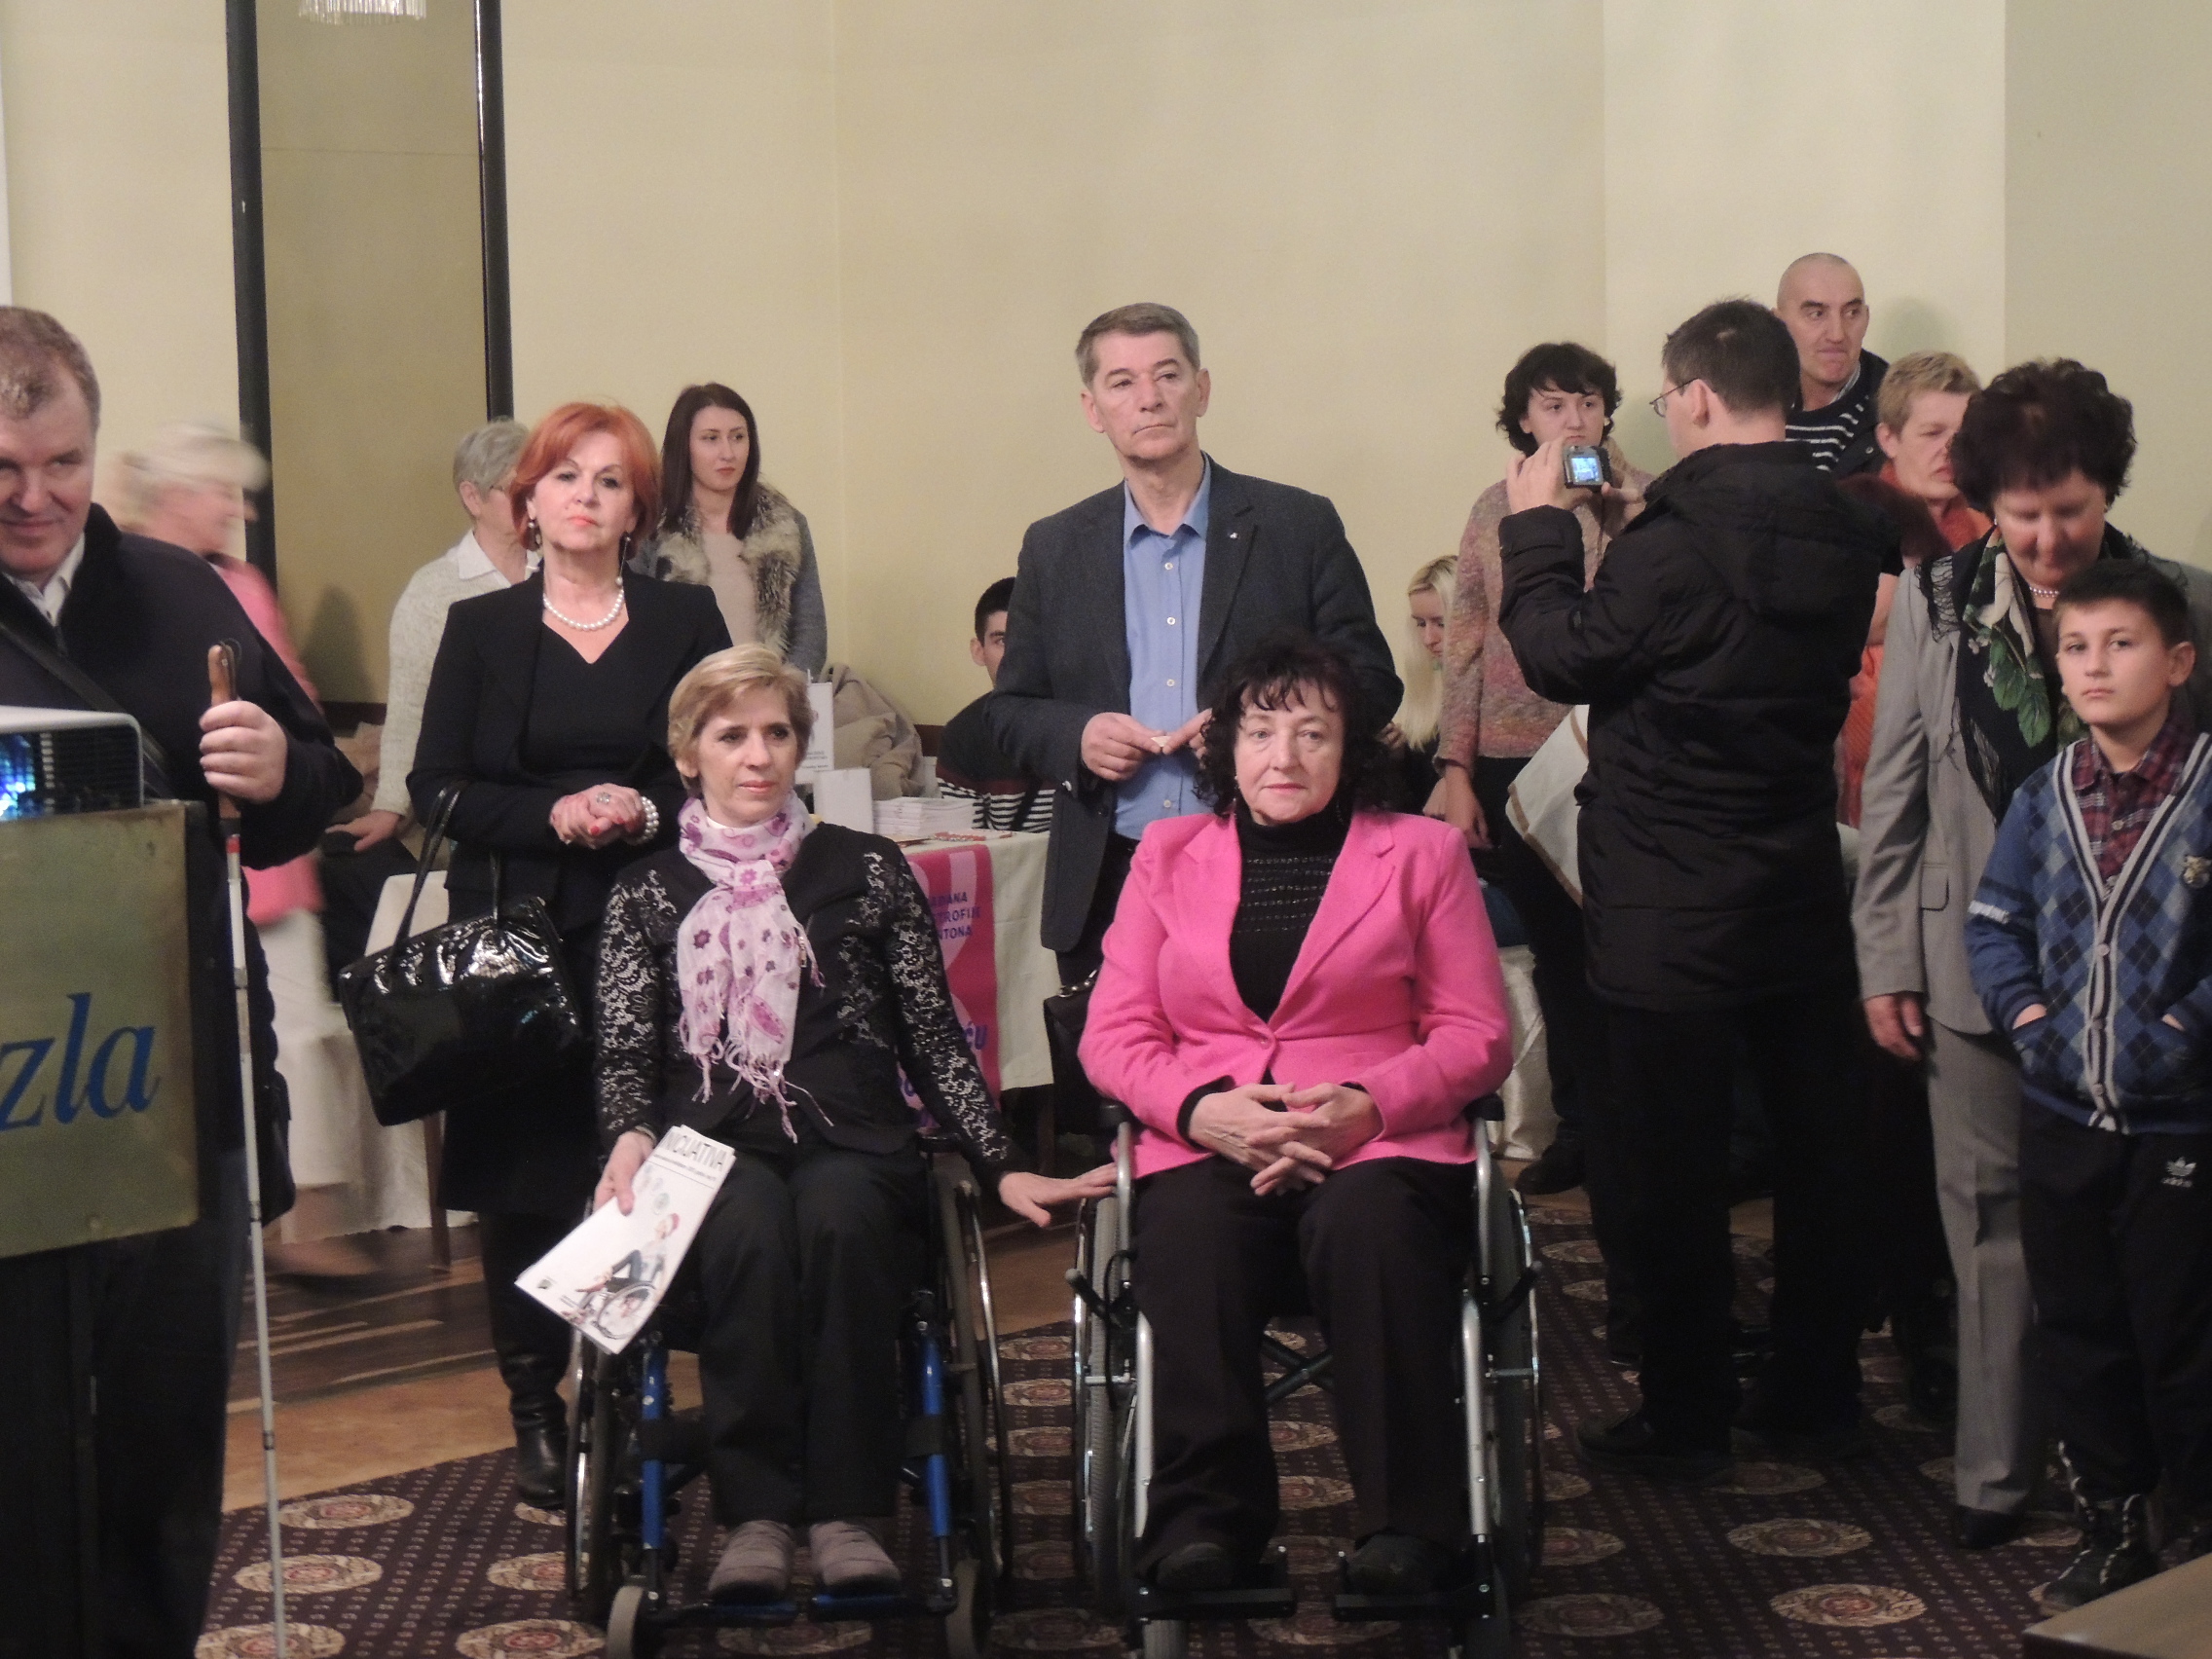 Obilježavanje Međunarodnog dana osoba sa invaliditetom u Tuzli